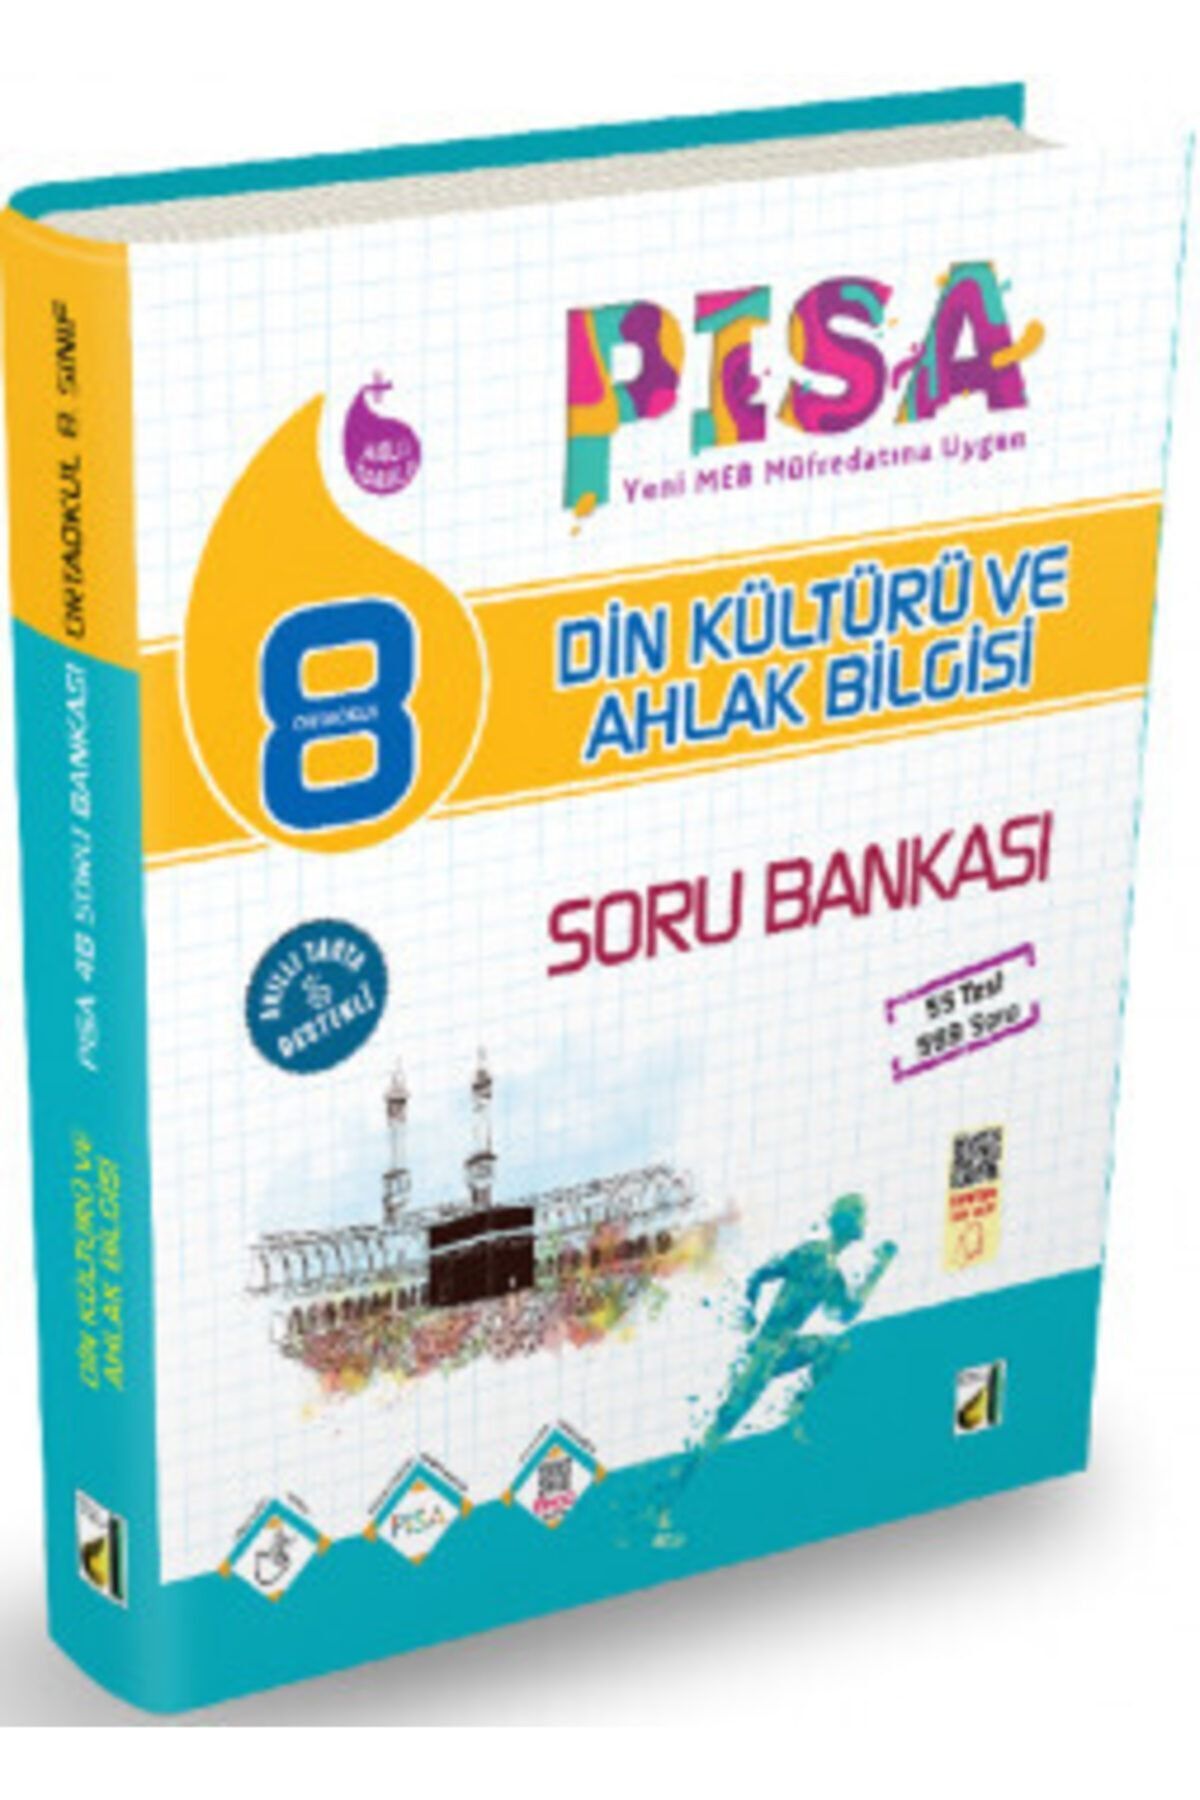 Damla Yayınları 8. Sınıf Lgs Pisa Yeni Nesil Din Kültürü Ve Ahlak Bilgisi Soru Bankası